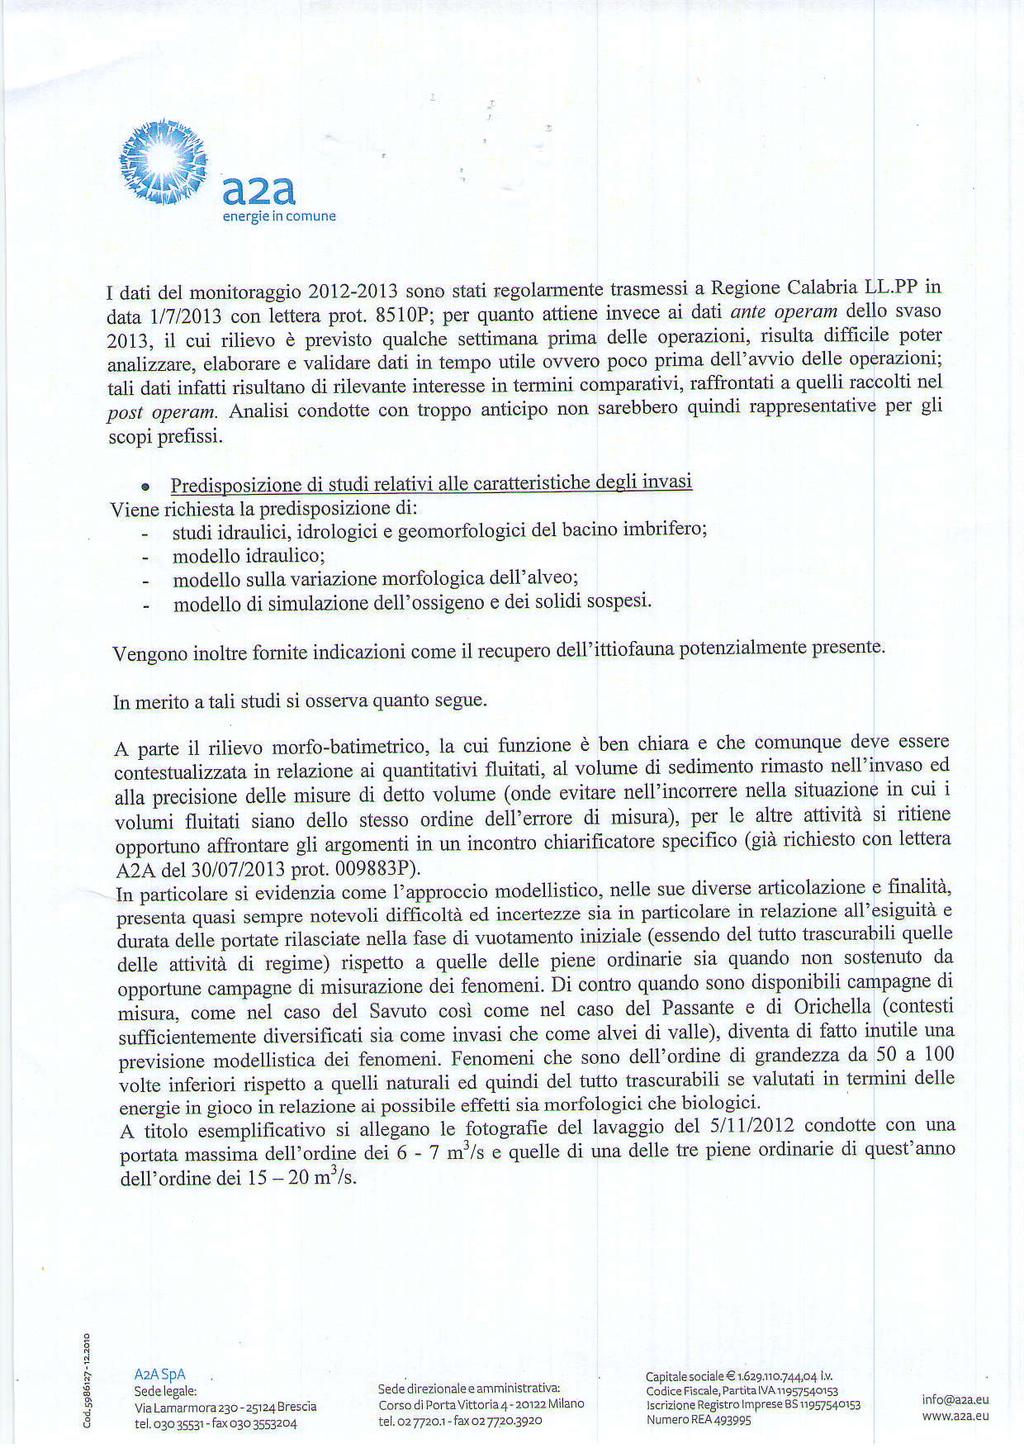 a2a ene.grelncom!ne I dati del monitoraggio 2012'2013 sono stati regolamenle tasmessi a Regione Calabria LL PP in data,11712013 con letten prot.